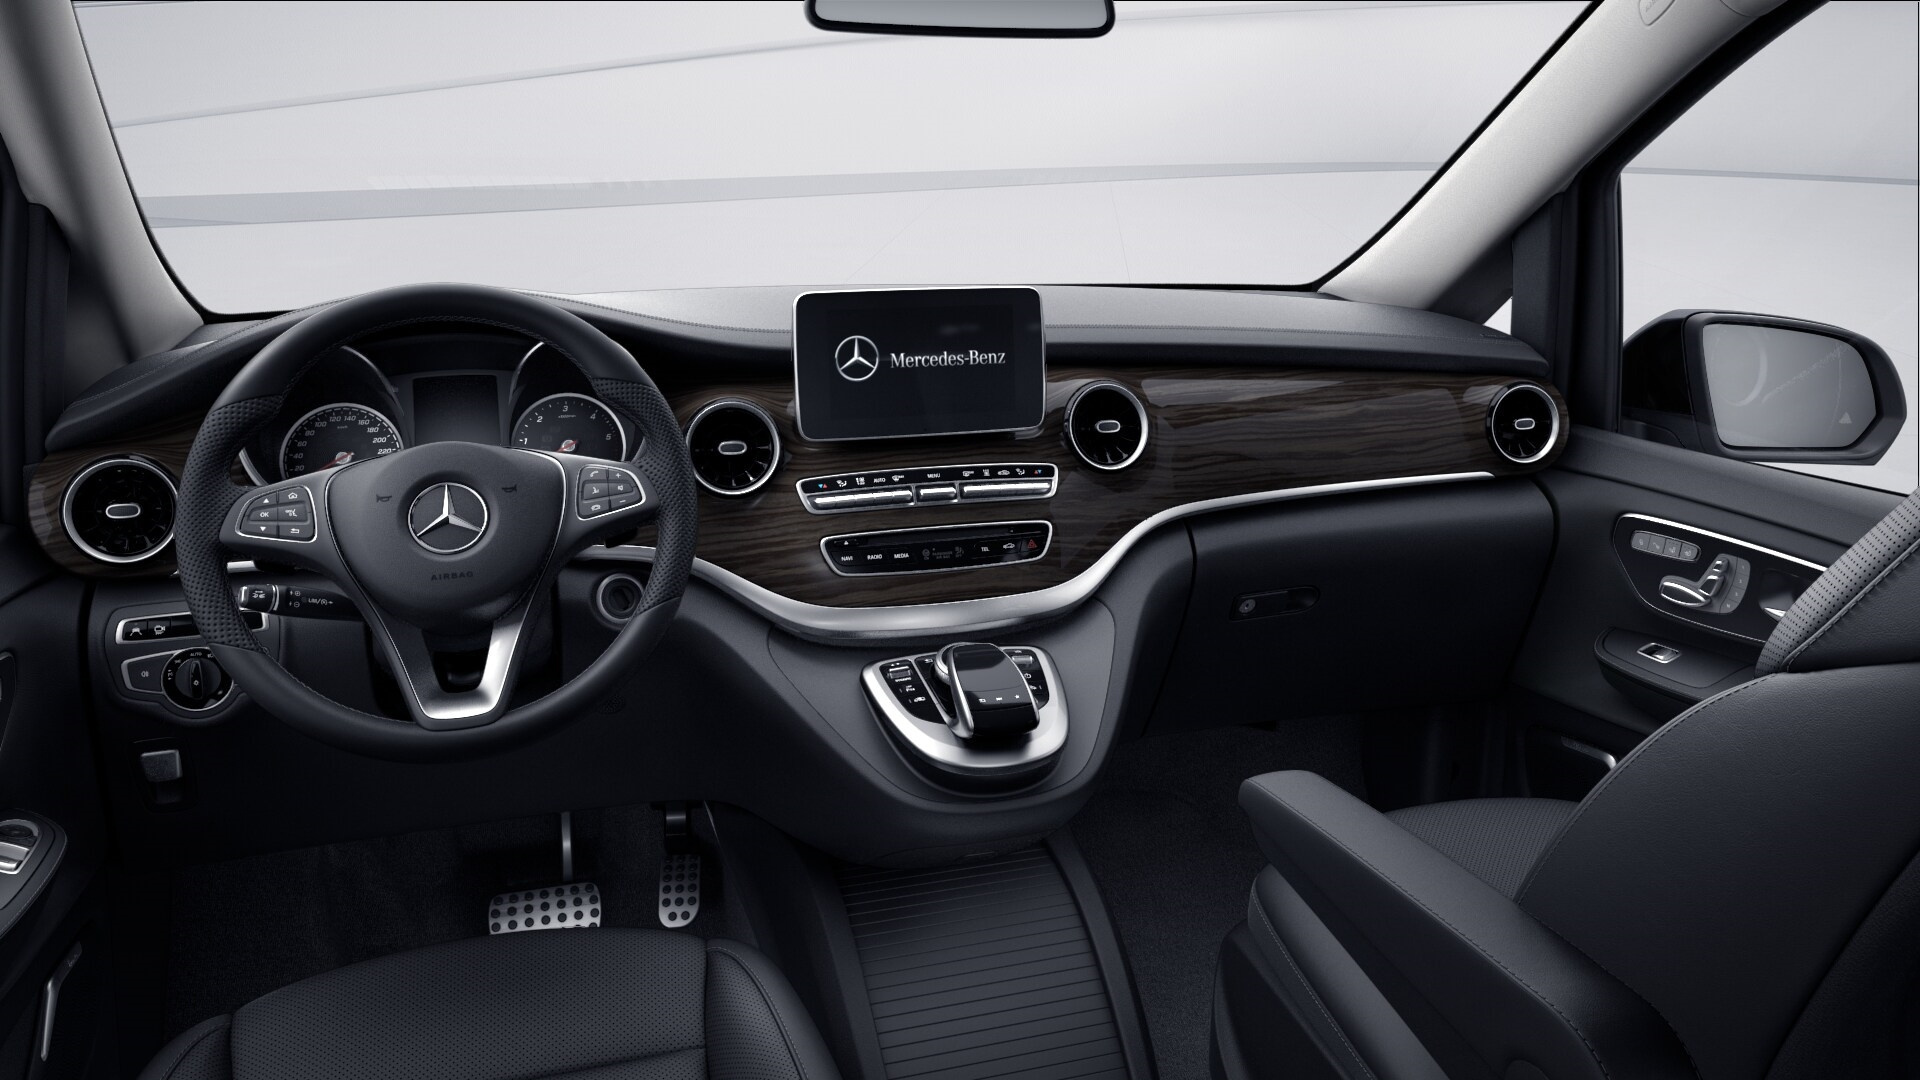 Mercedes-Benz комплектация Avantgarde / E 300 d двигатель 2 литра (237 л.с.) Черный